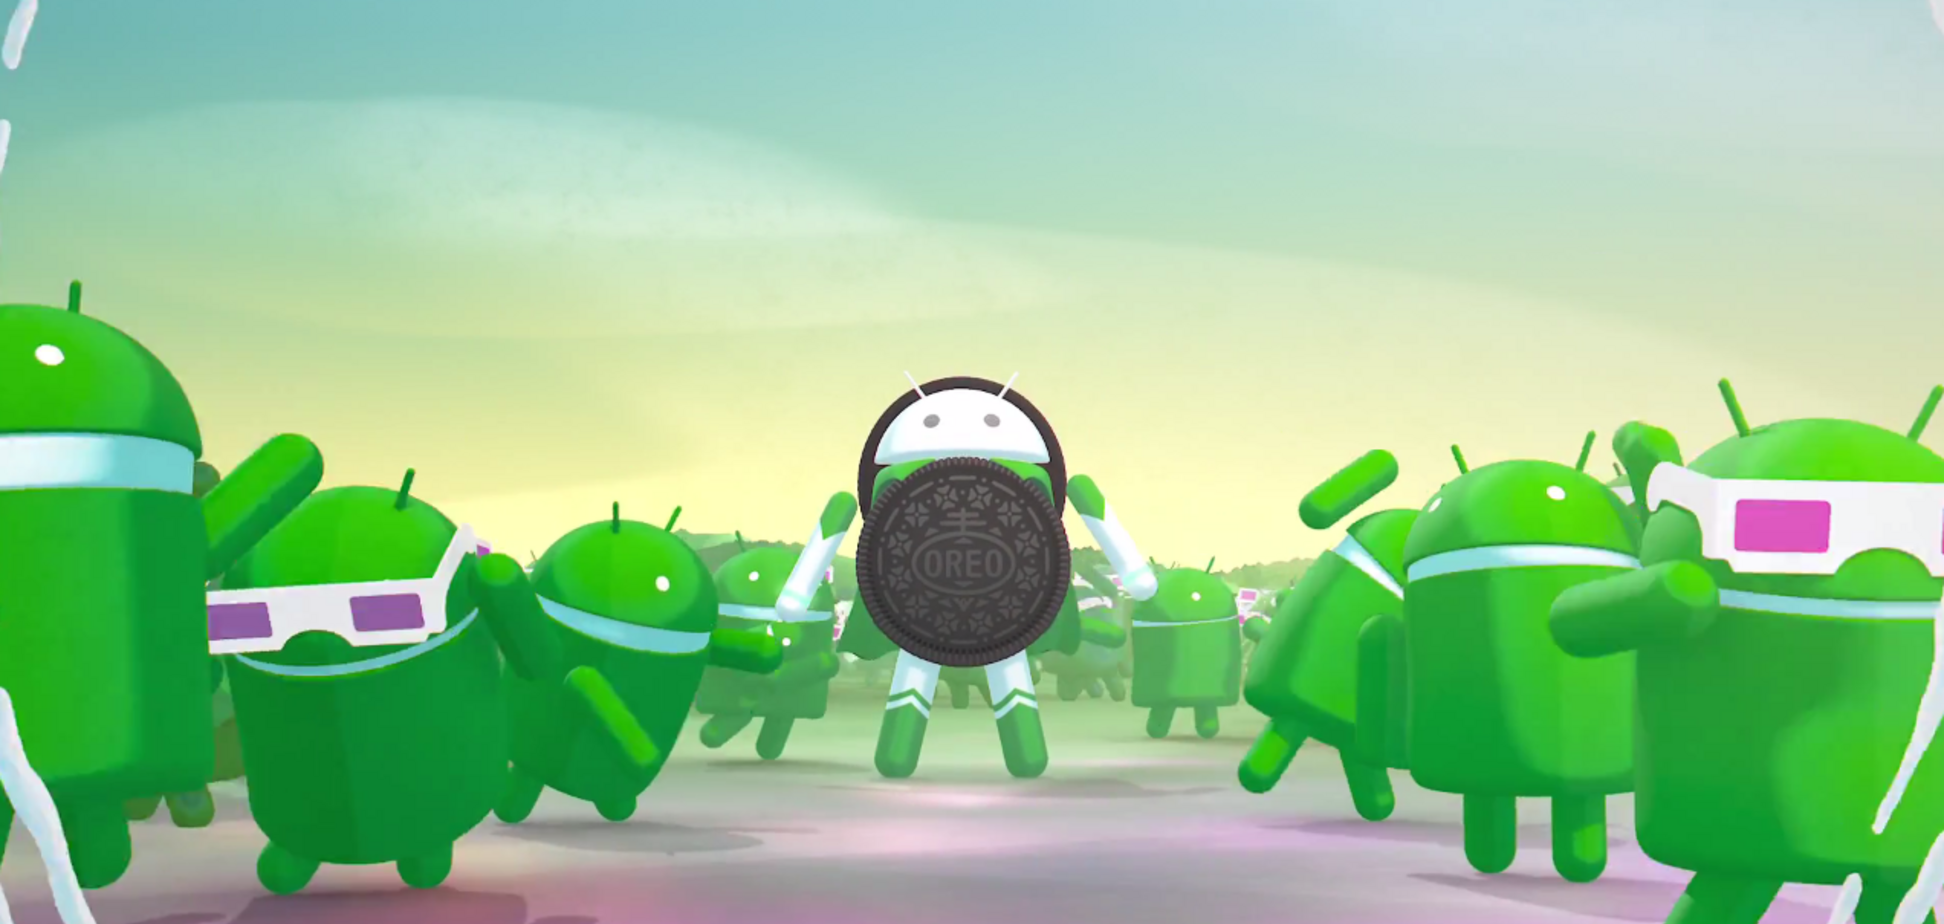 Швидше, потужніше і солодше: Google випустив Android 8.0